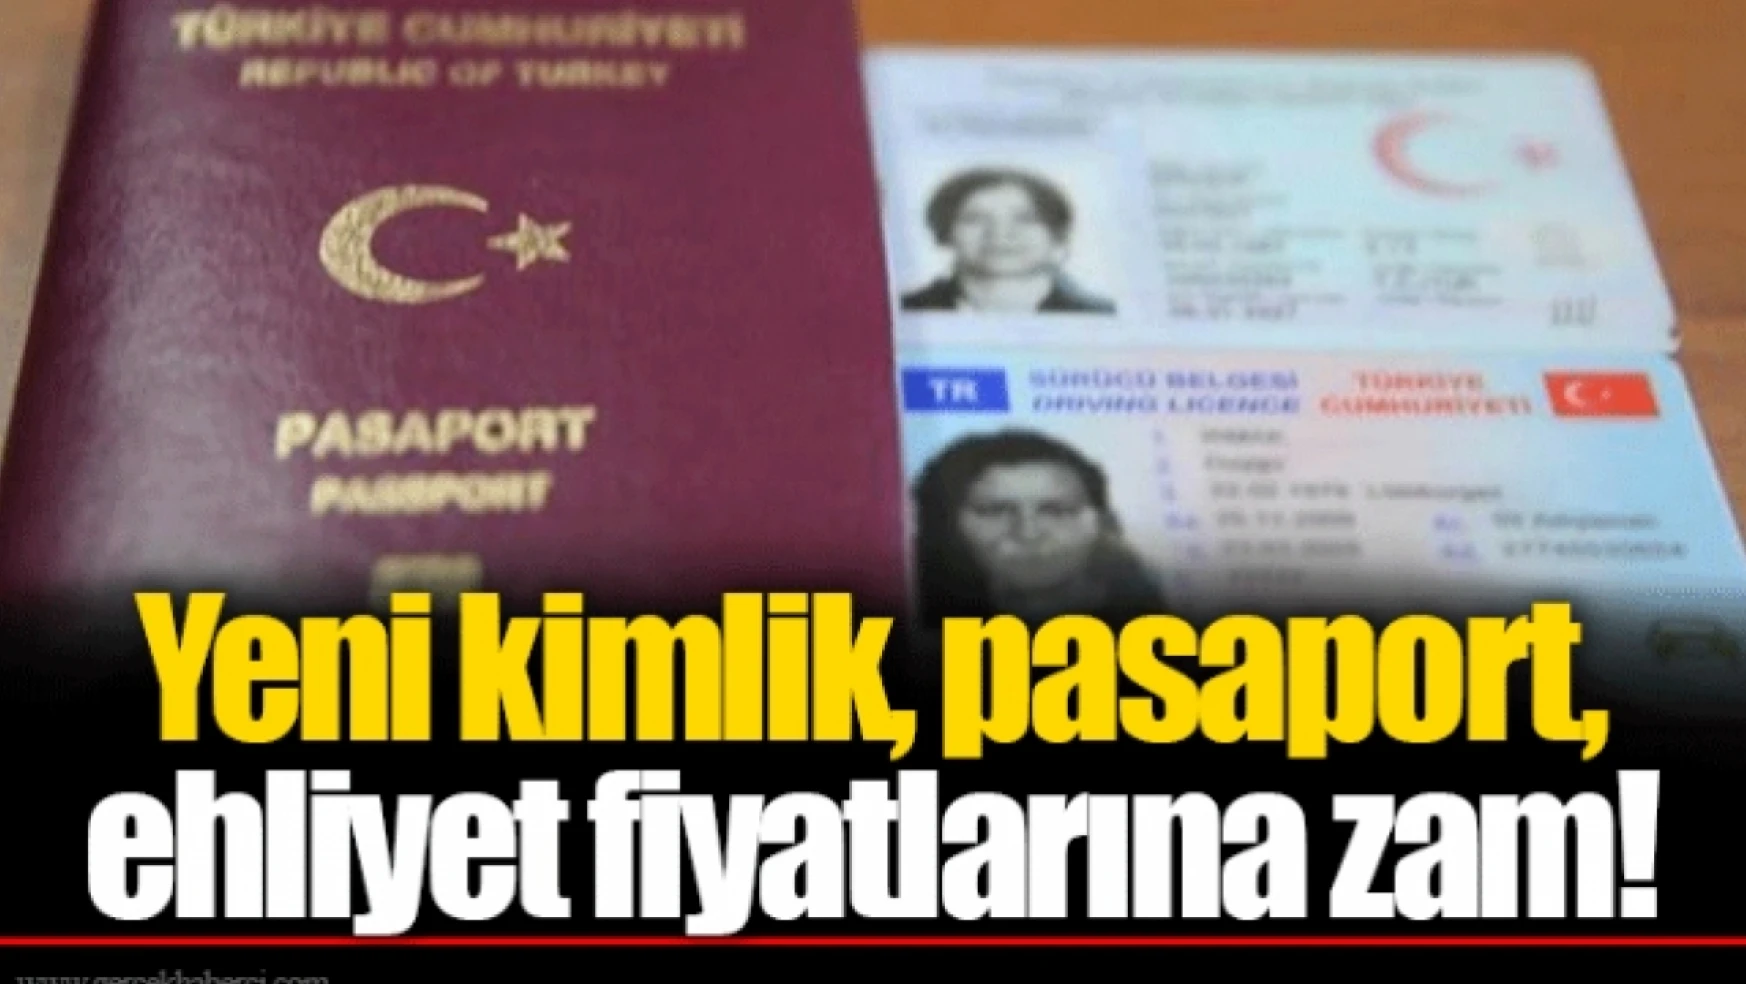 Yeni kimlik, pasaport, ehliyet fiyatları değişiyor